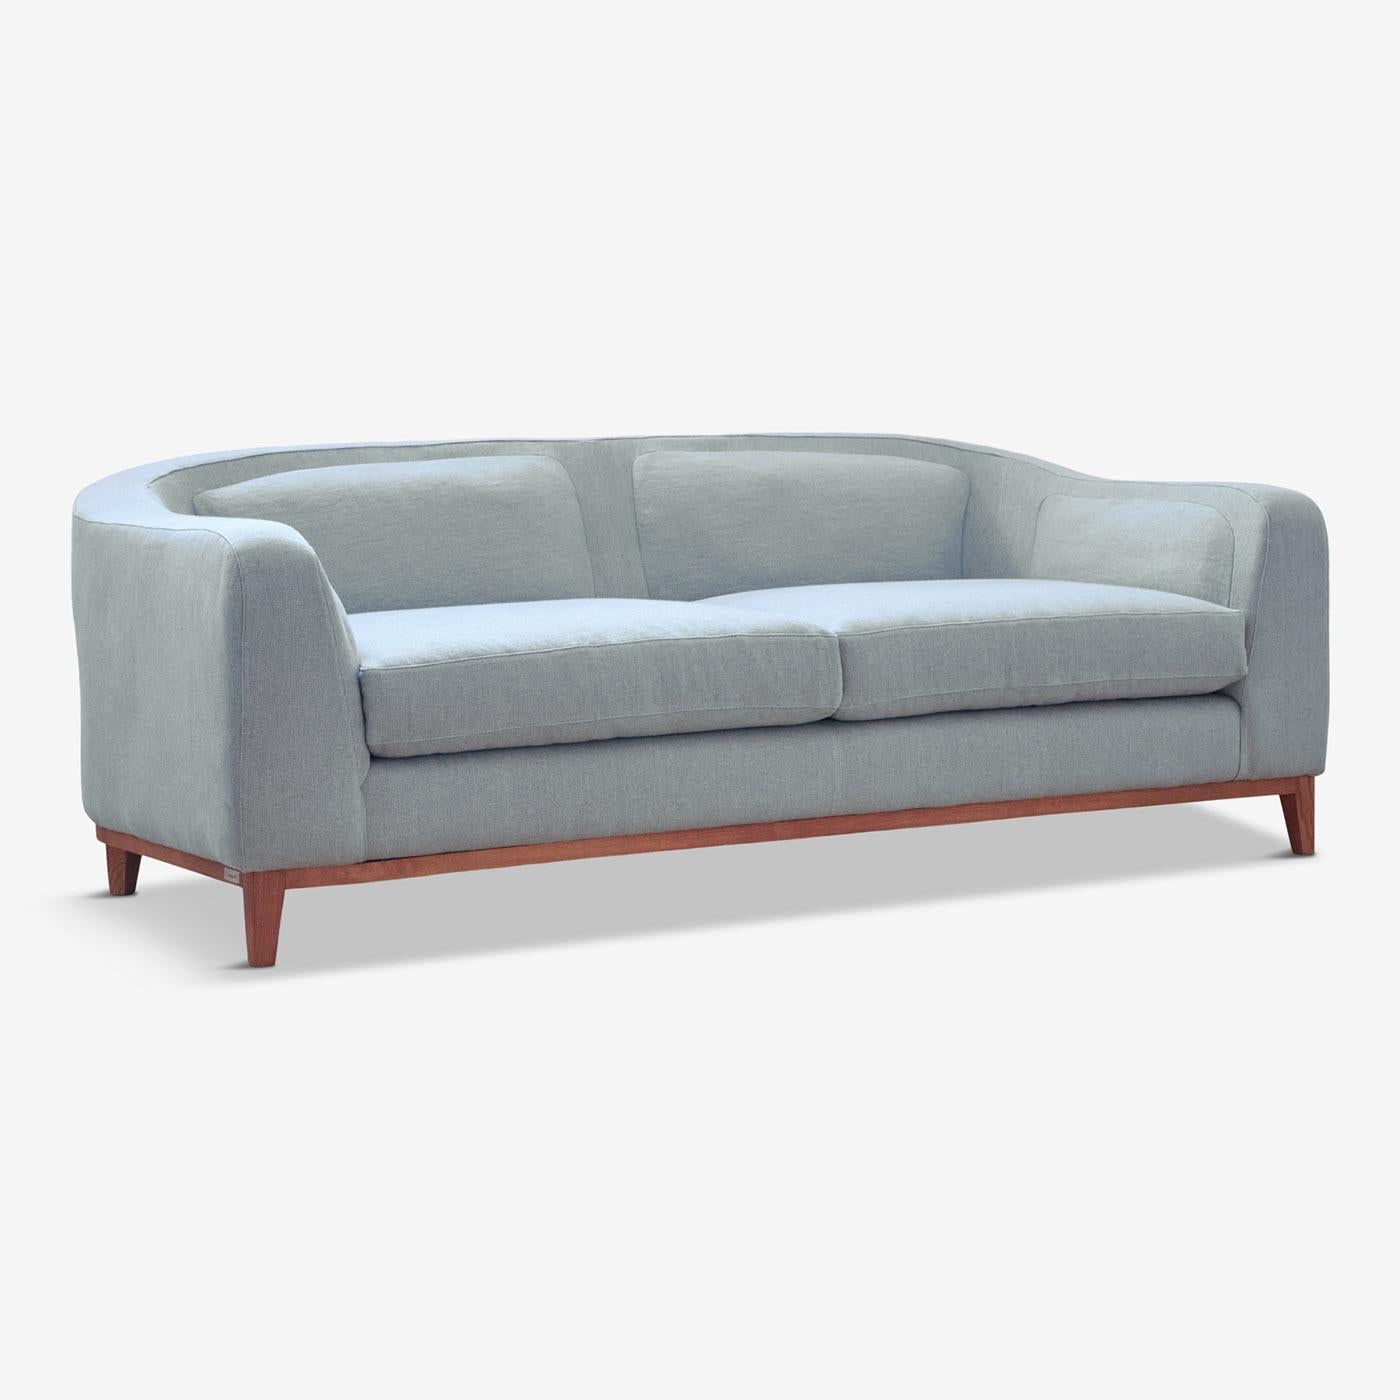 Contemporain et compact, ce canapé ludique de Brian Sironi ajoute du style à n'importe quelle pièce. Les pieds et l'ensemble de l'armature sont fabriqués en bois de hêtre massif. L'assise et le dossier sont dotés d'un coussin pelucheux intégré